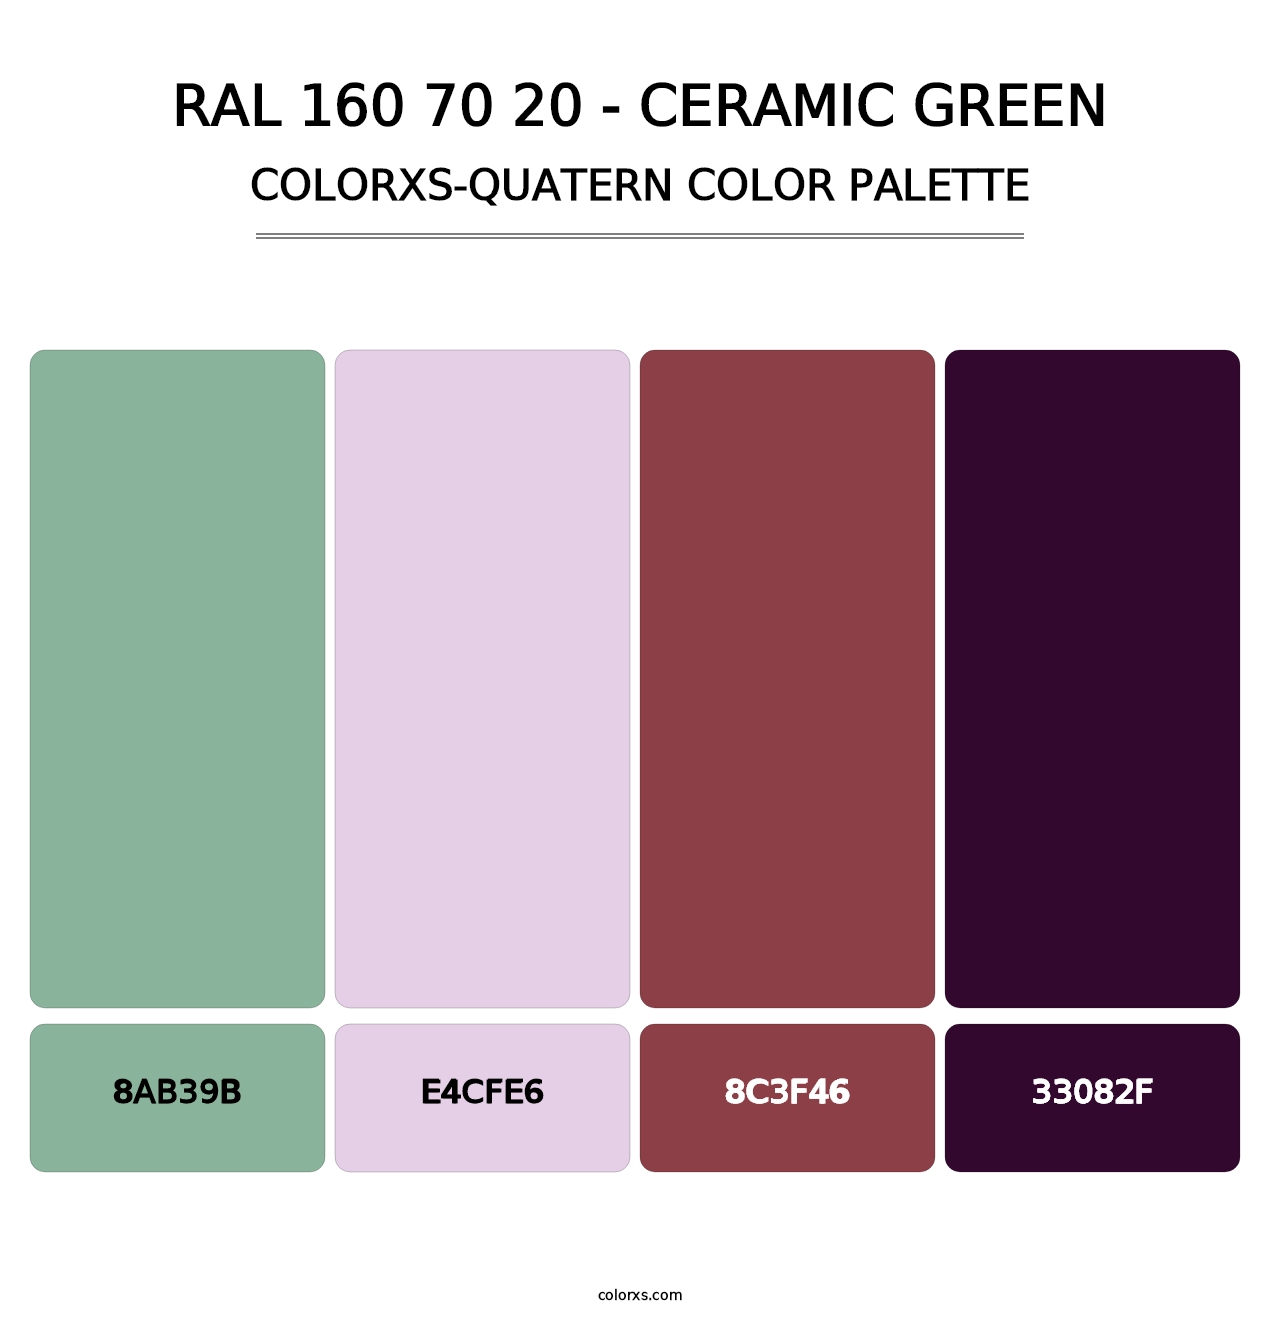 RAL 160 70 20 - Ceramic Green - Colorxs Quatern Palette